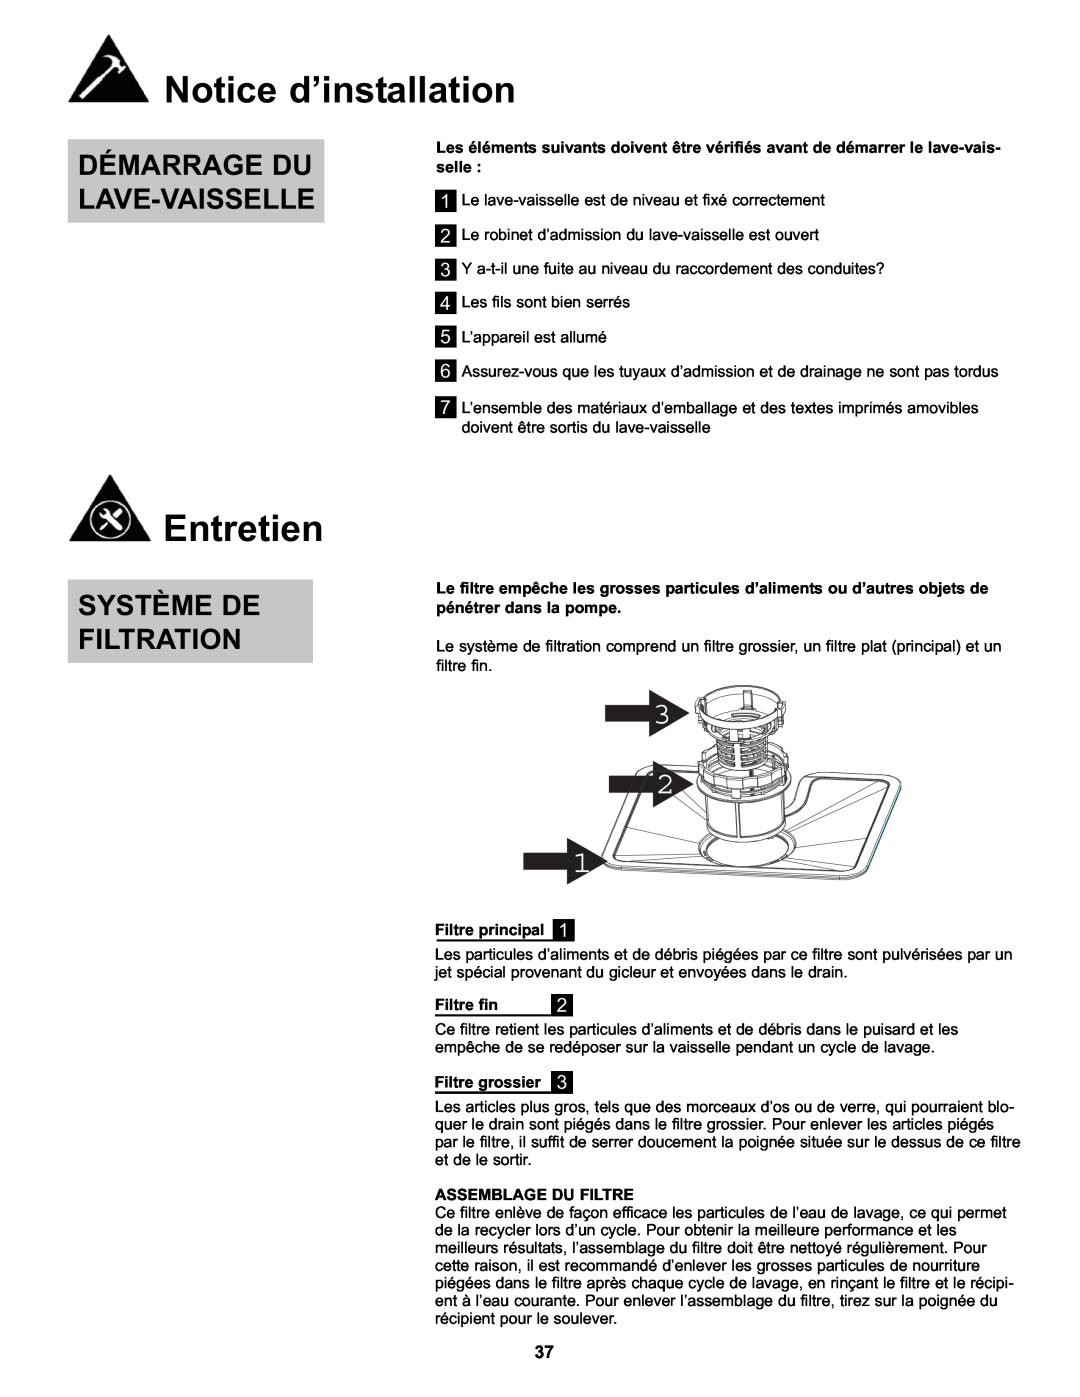 Danby DDW611WLED Entretien, Démarrage Du Lave-Vaisselle, Système De Filtration, Notice d’installation, Filtre principal 